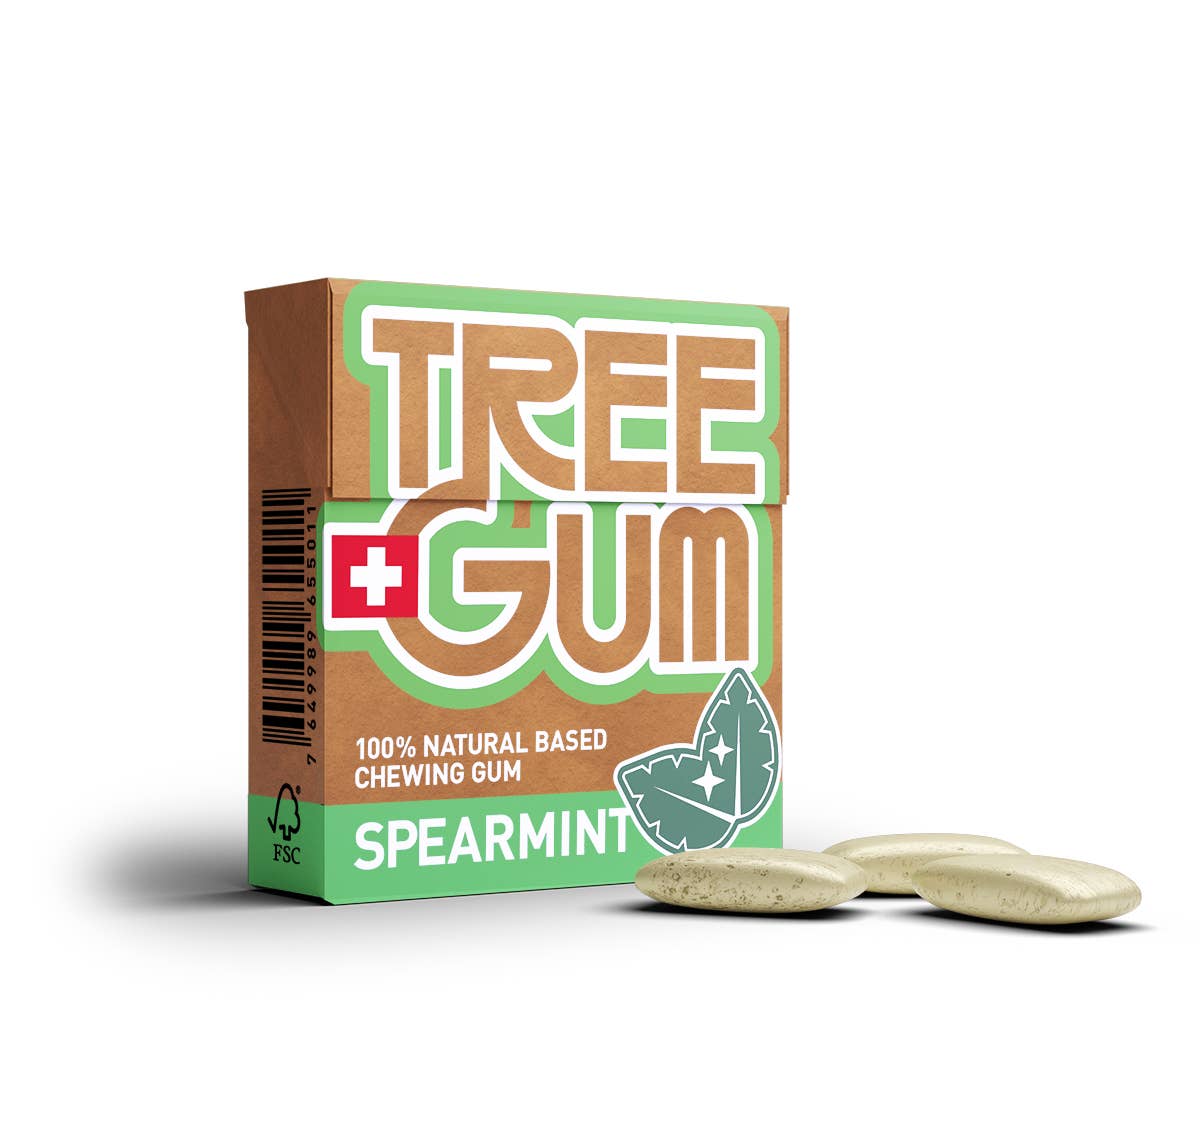 Boîte fraîcheur cannelle - Tree Gum